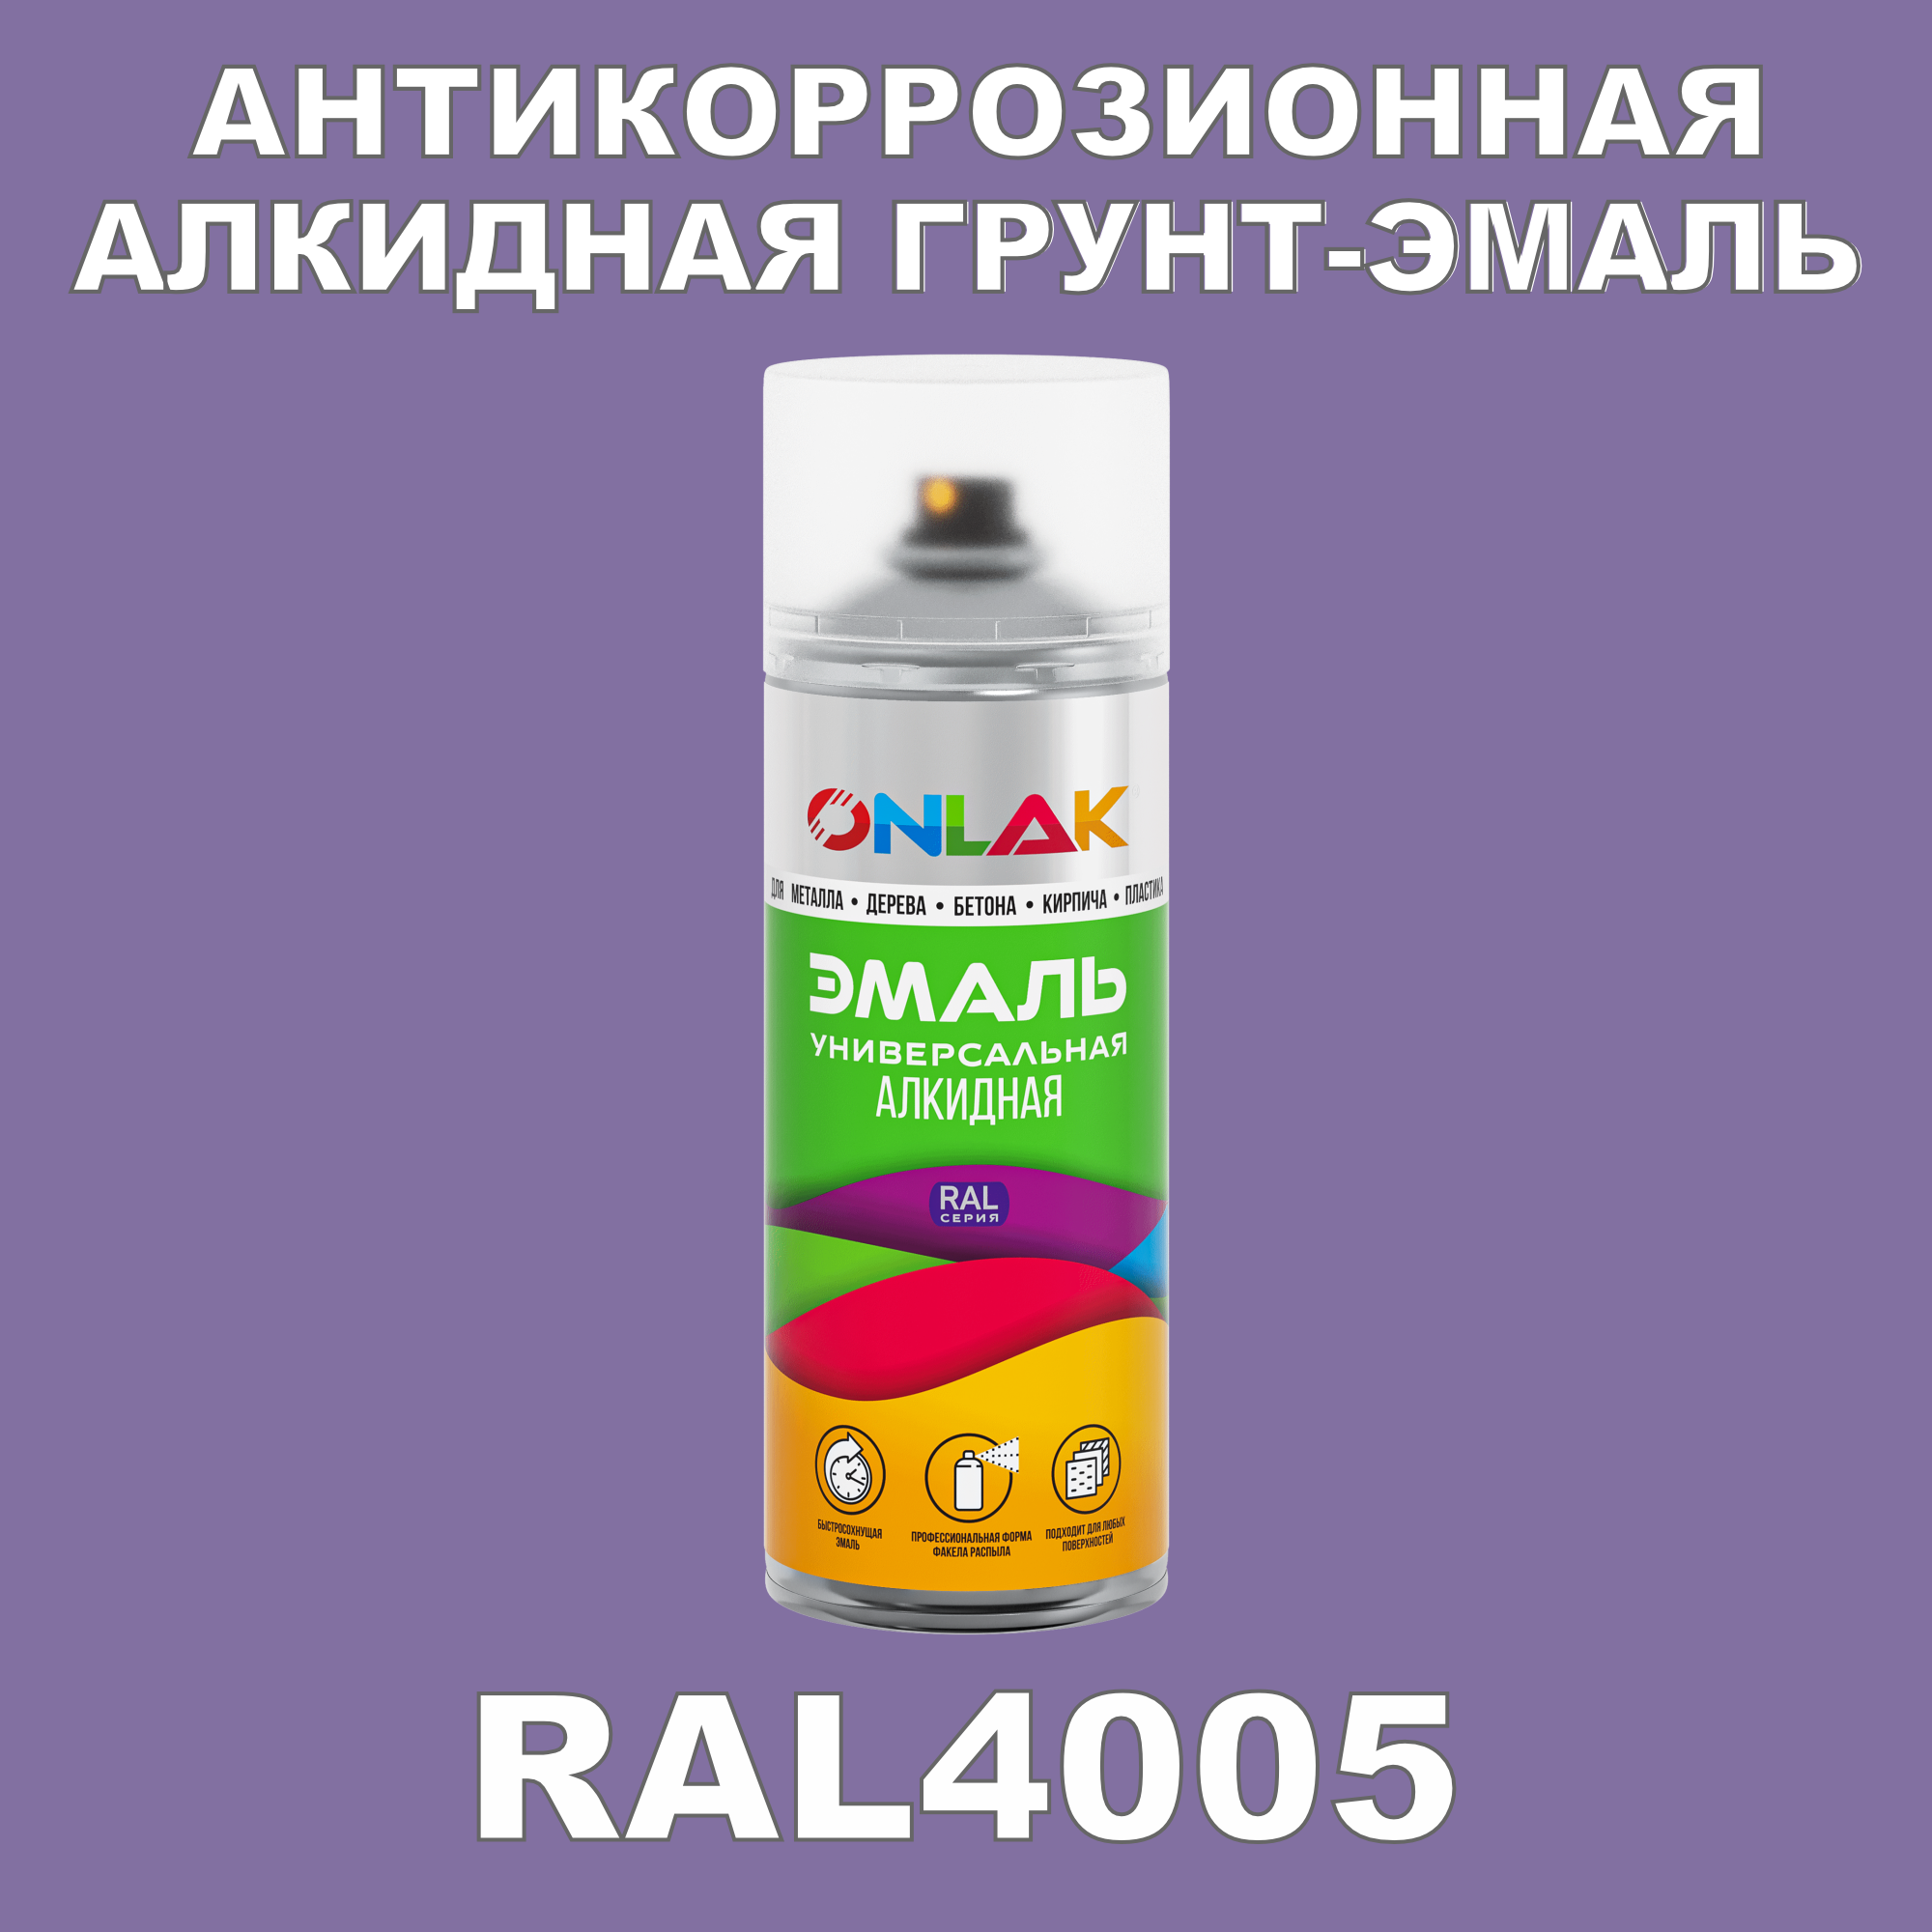 Антикоррозионная грунт-эмаль ONLAK RAL 4005,фиолетовый,662 мл рюкзак на молнии 2 наружных кармана фиолетовый